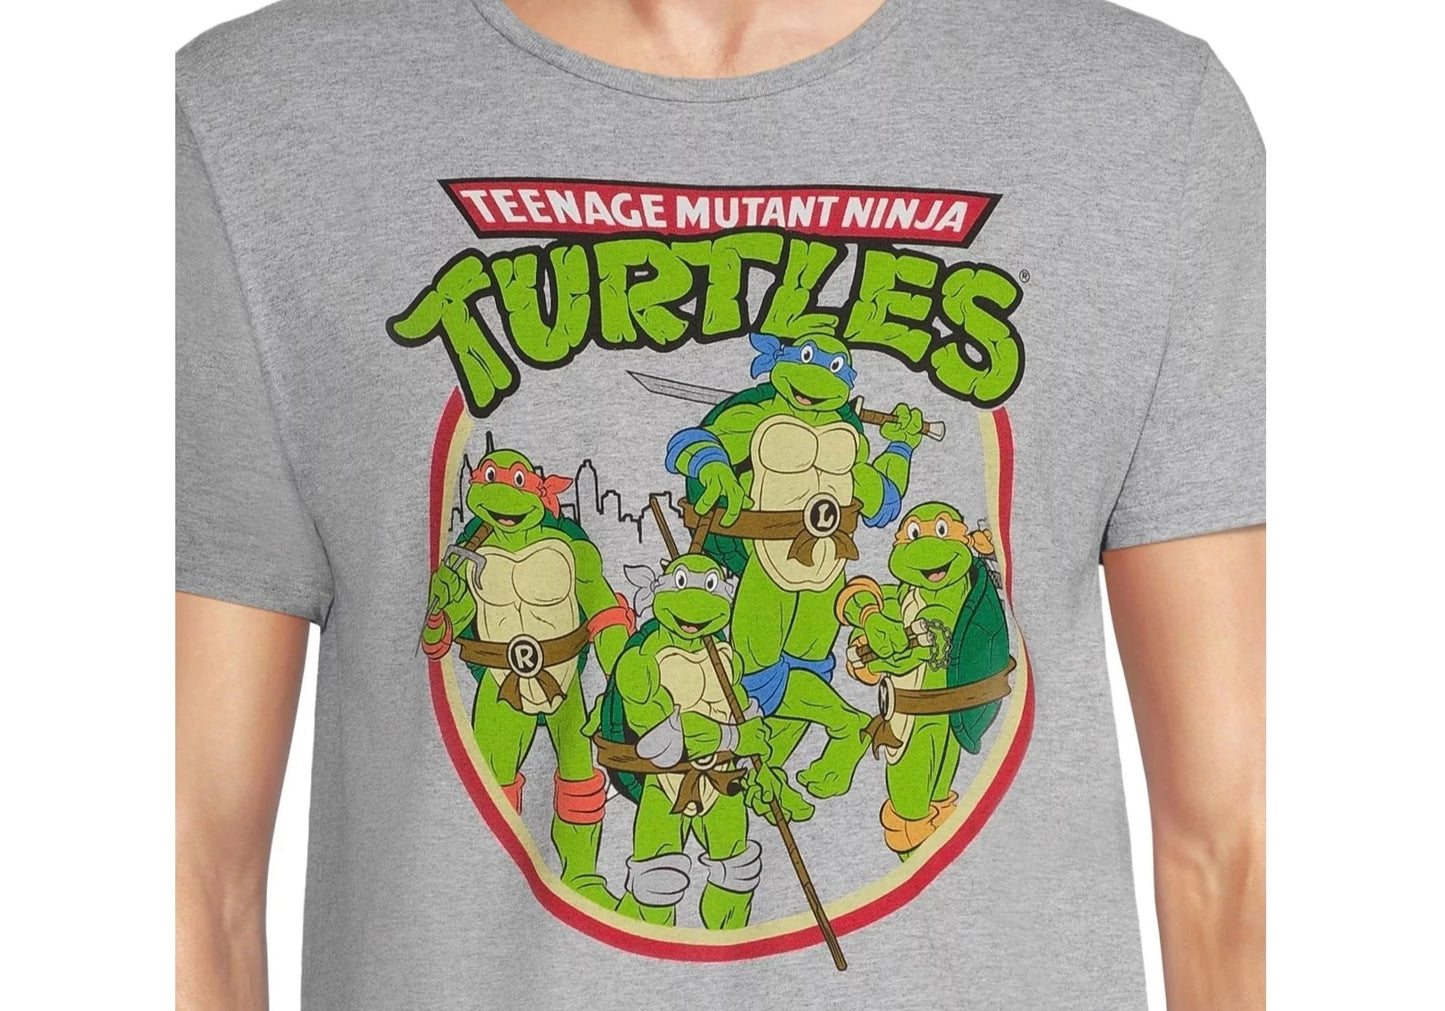 Teenage Mutant Ninja Turtles "Retro Look" T-Shirt Größe M (38-40)